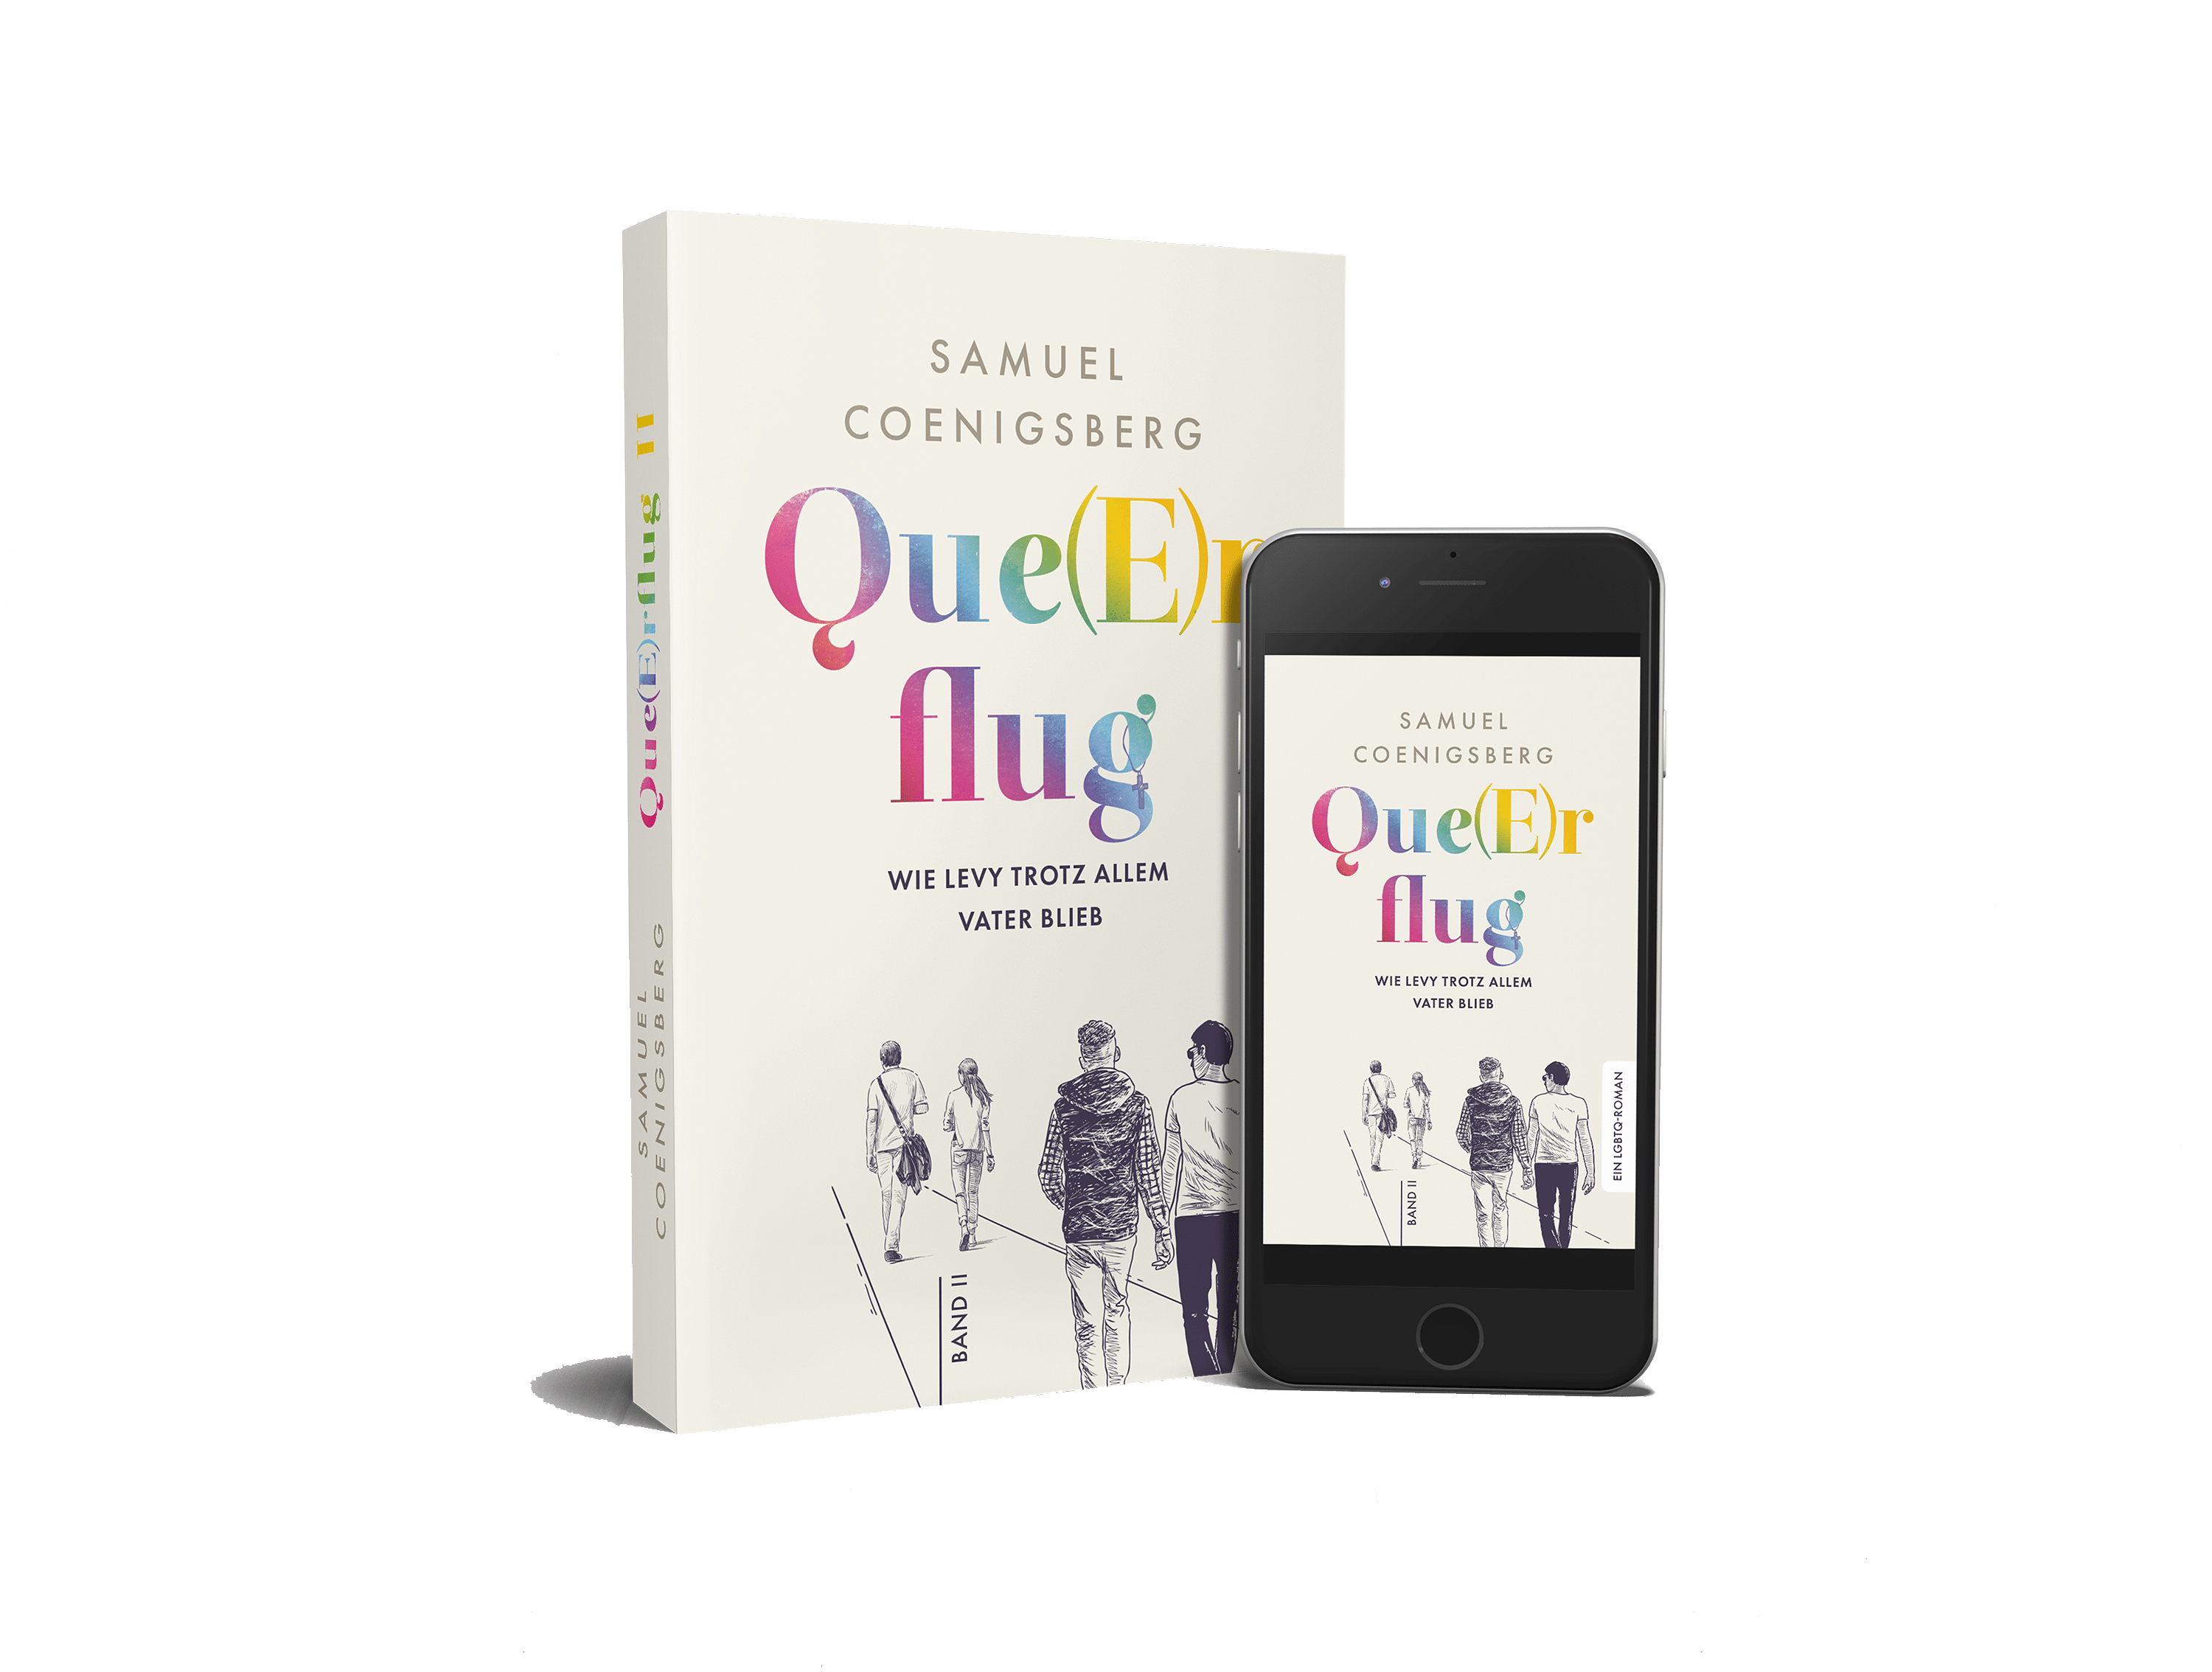 Samuel Coenigsberg Queerflug Autor queer Literatur